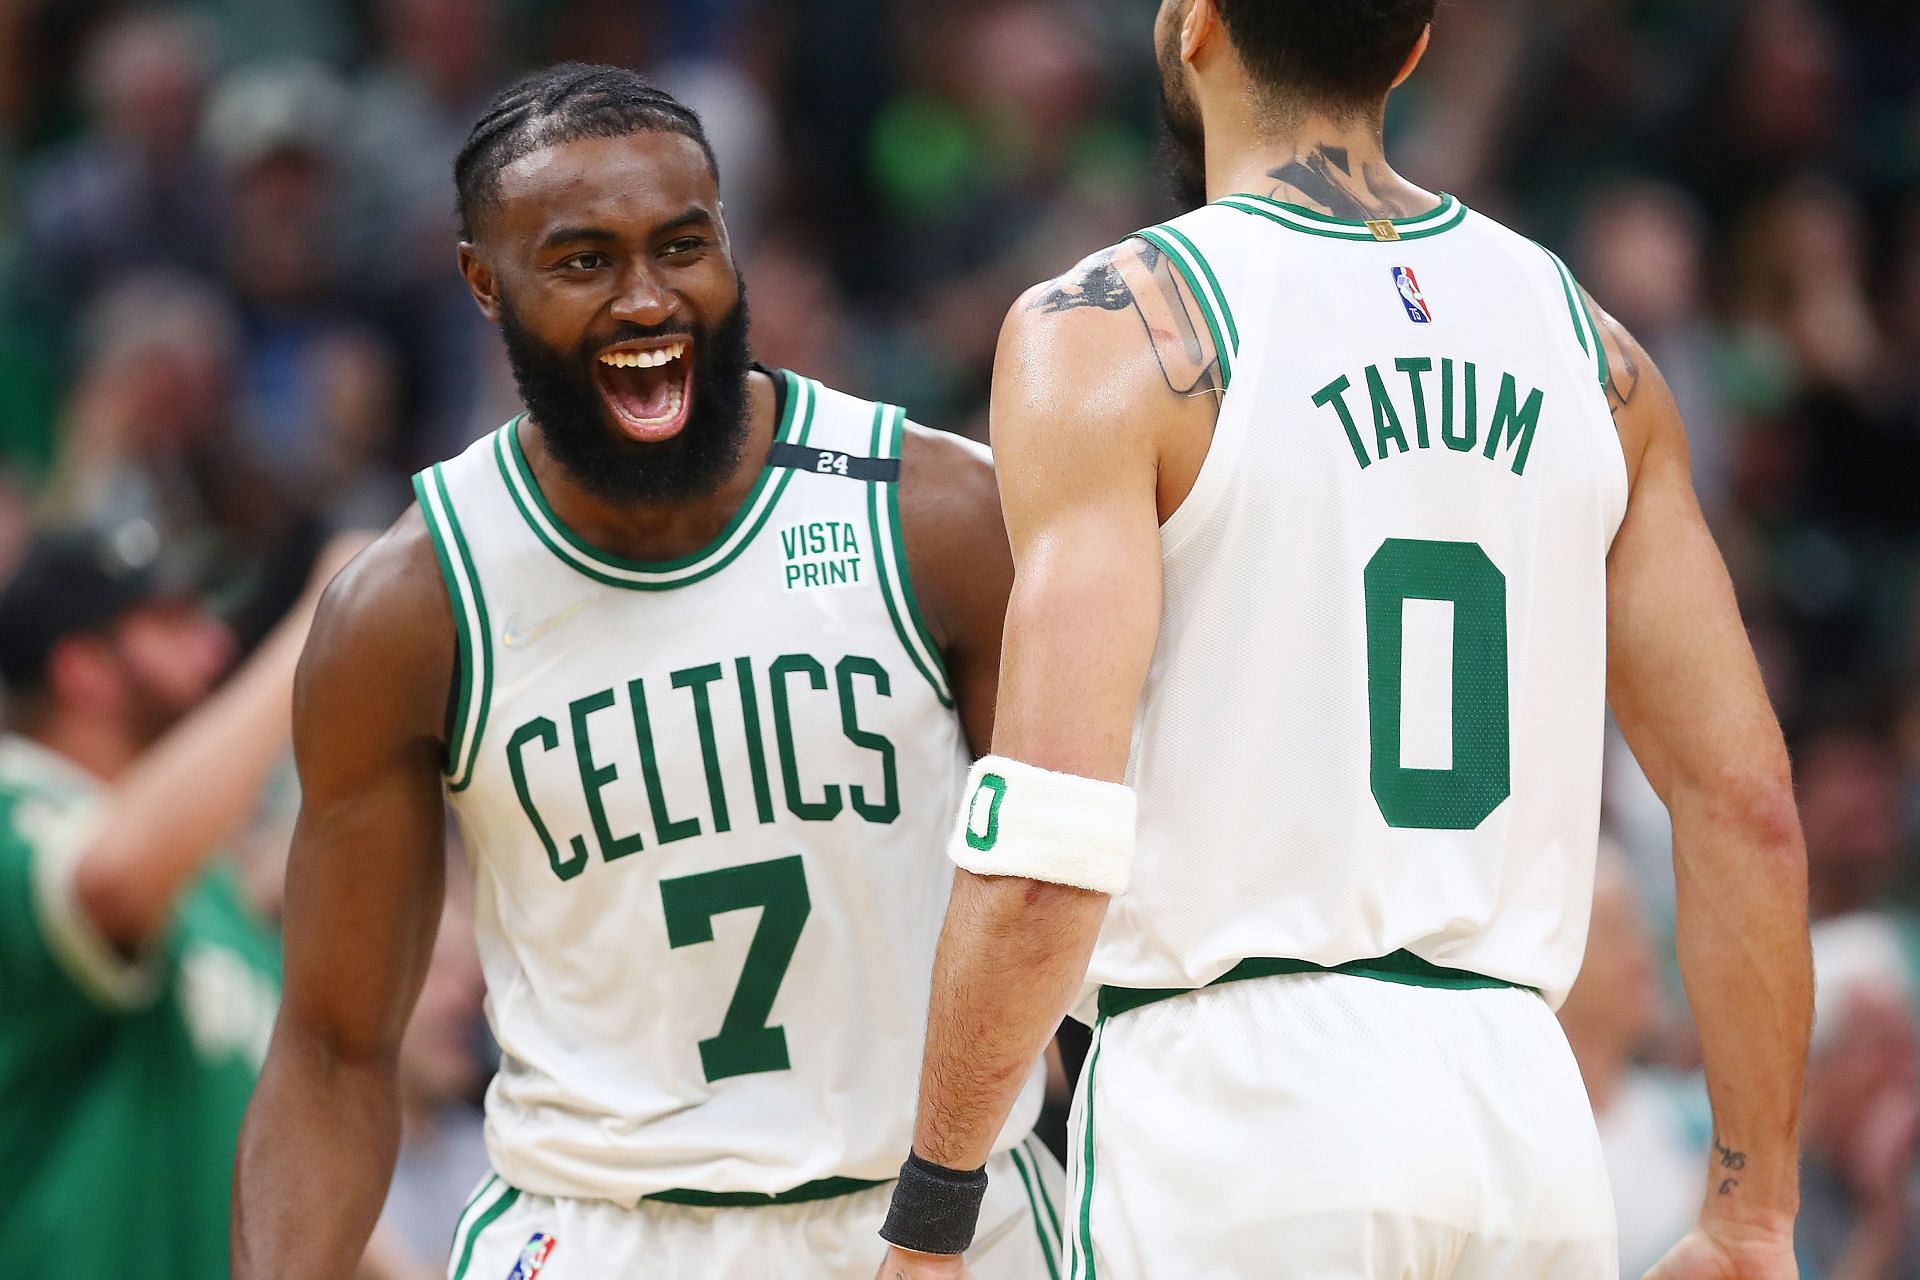 Jaylen Brown and Jayson Tatum of the Boston Celtics